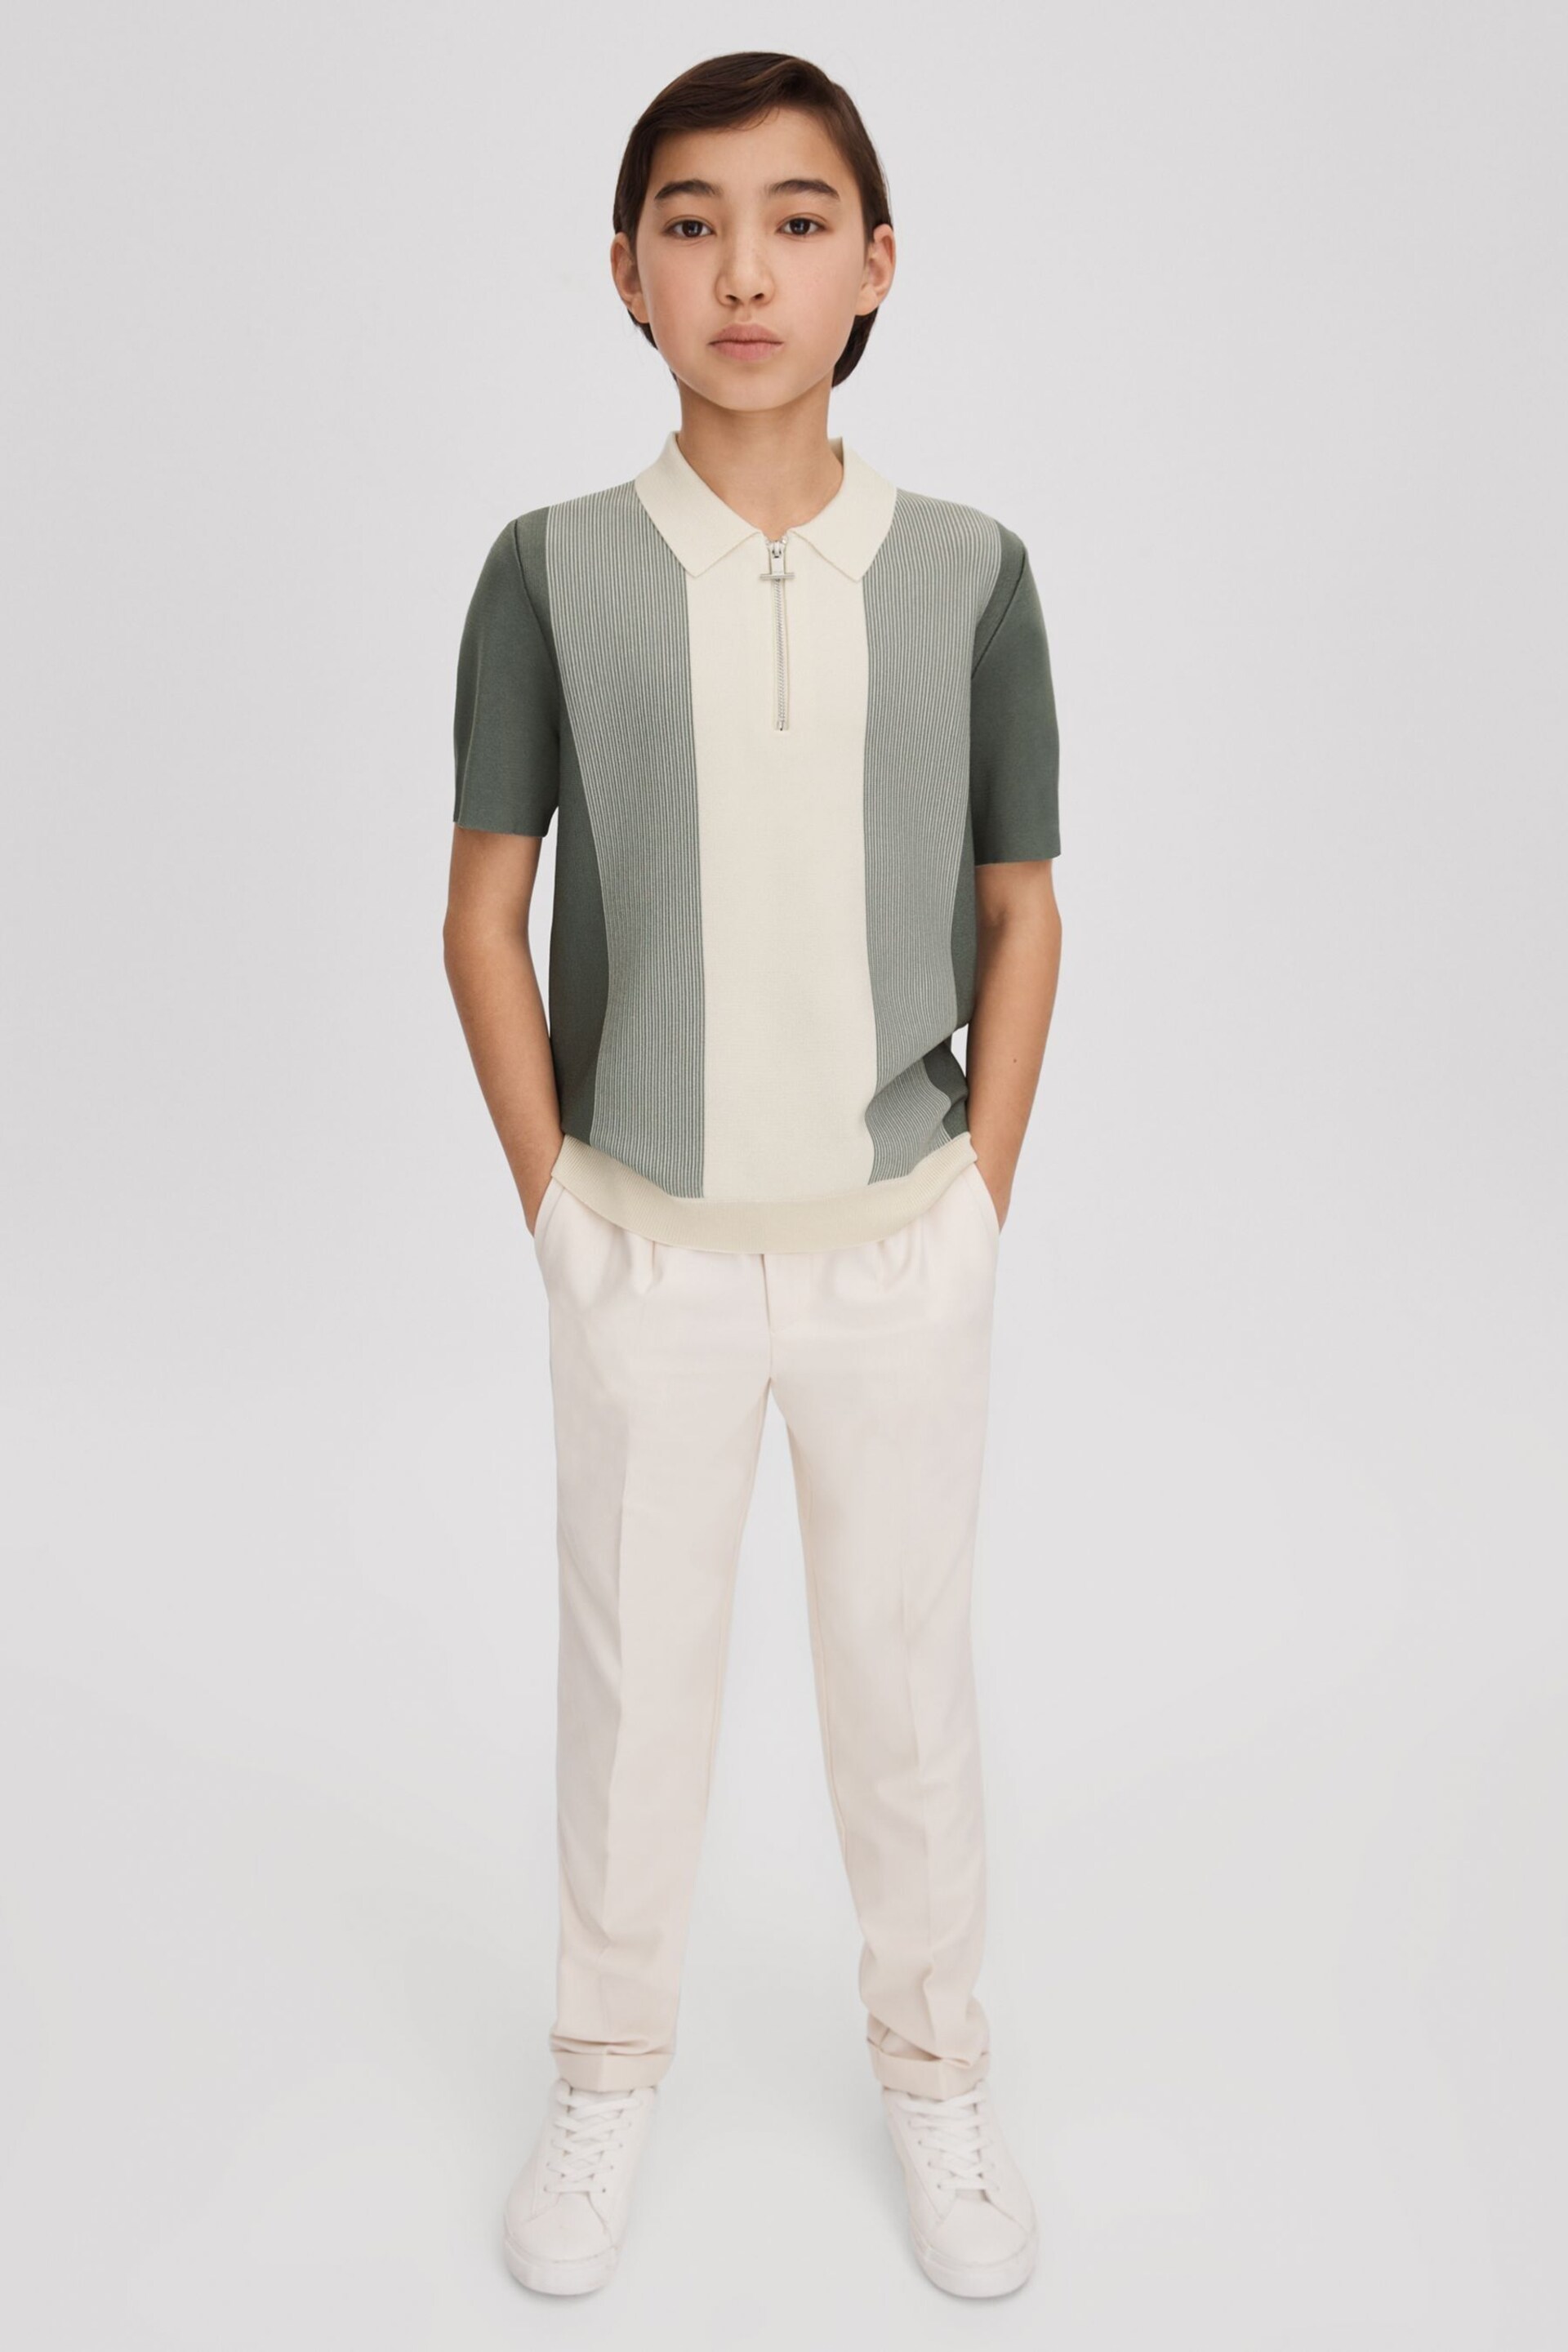 Reiss Sage Milton Senior Half-Zip Striped Polo Shirt - Image 3 of 4